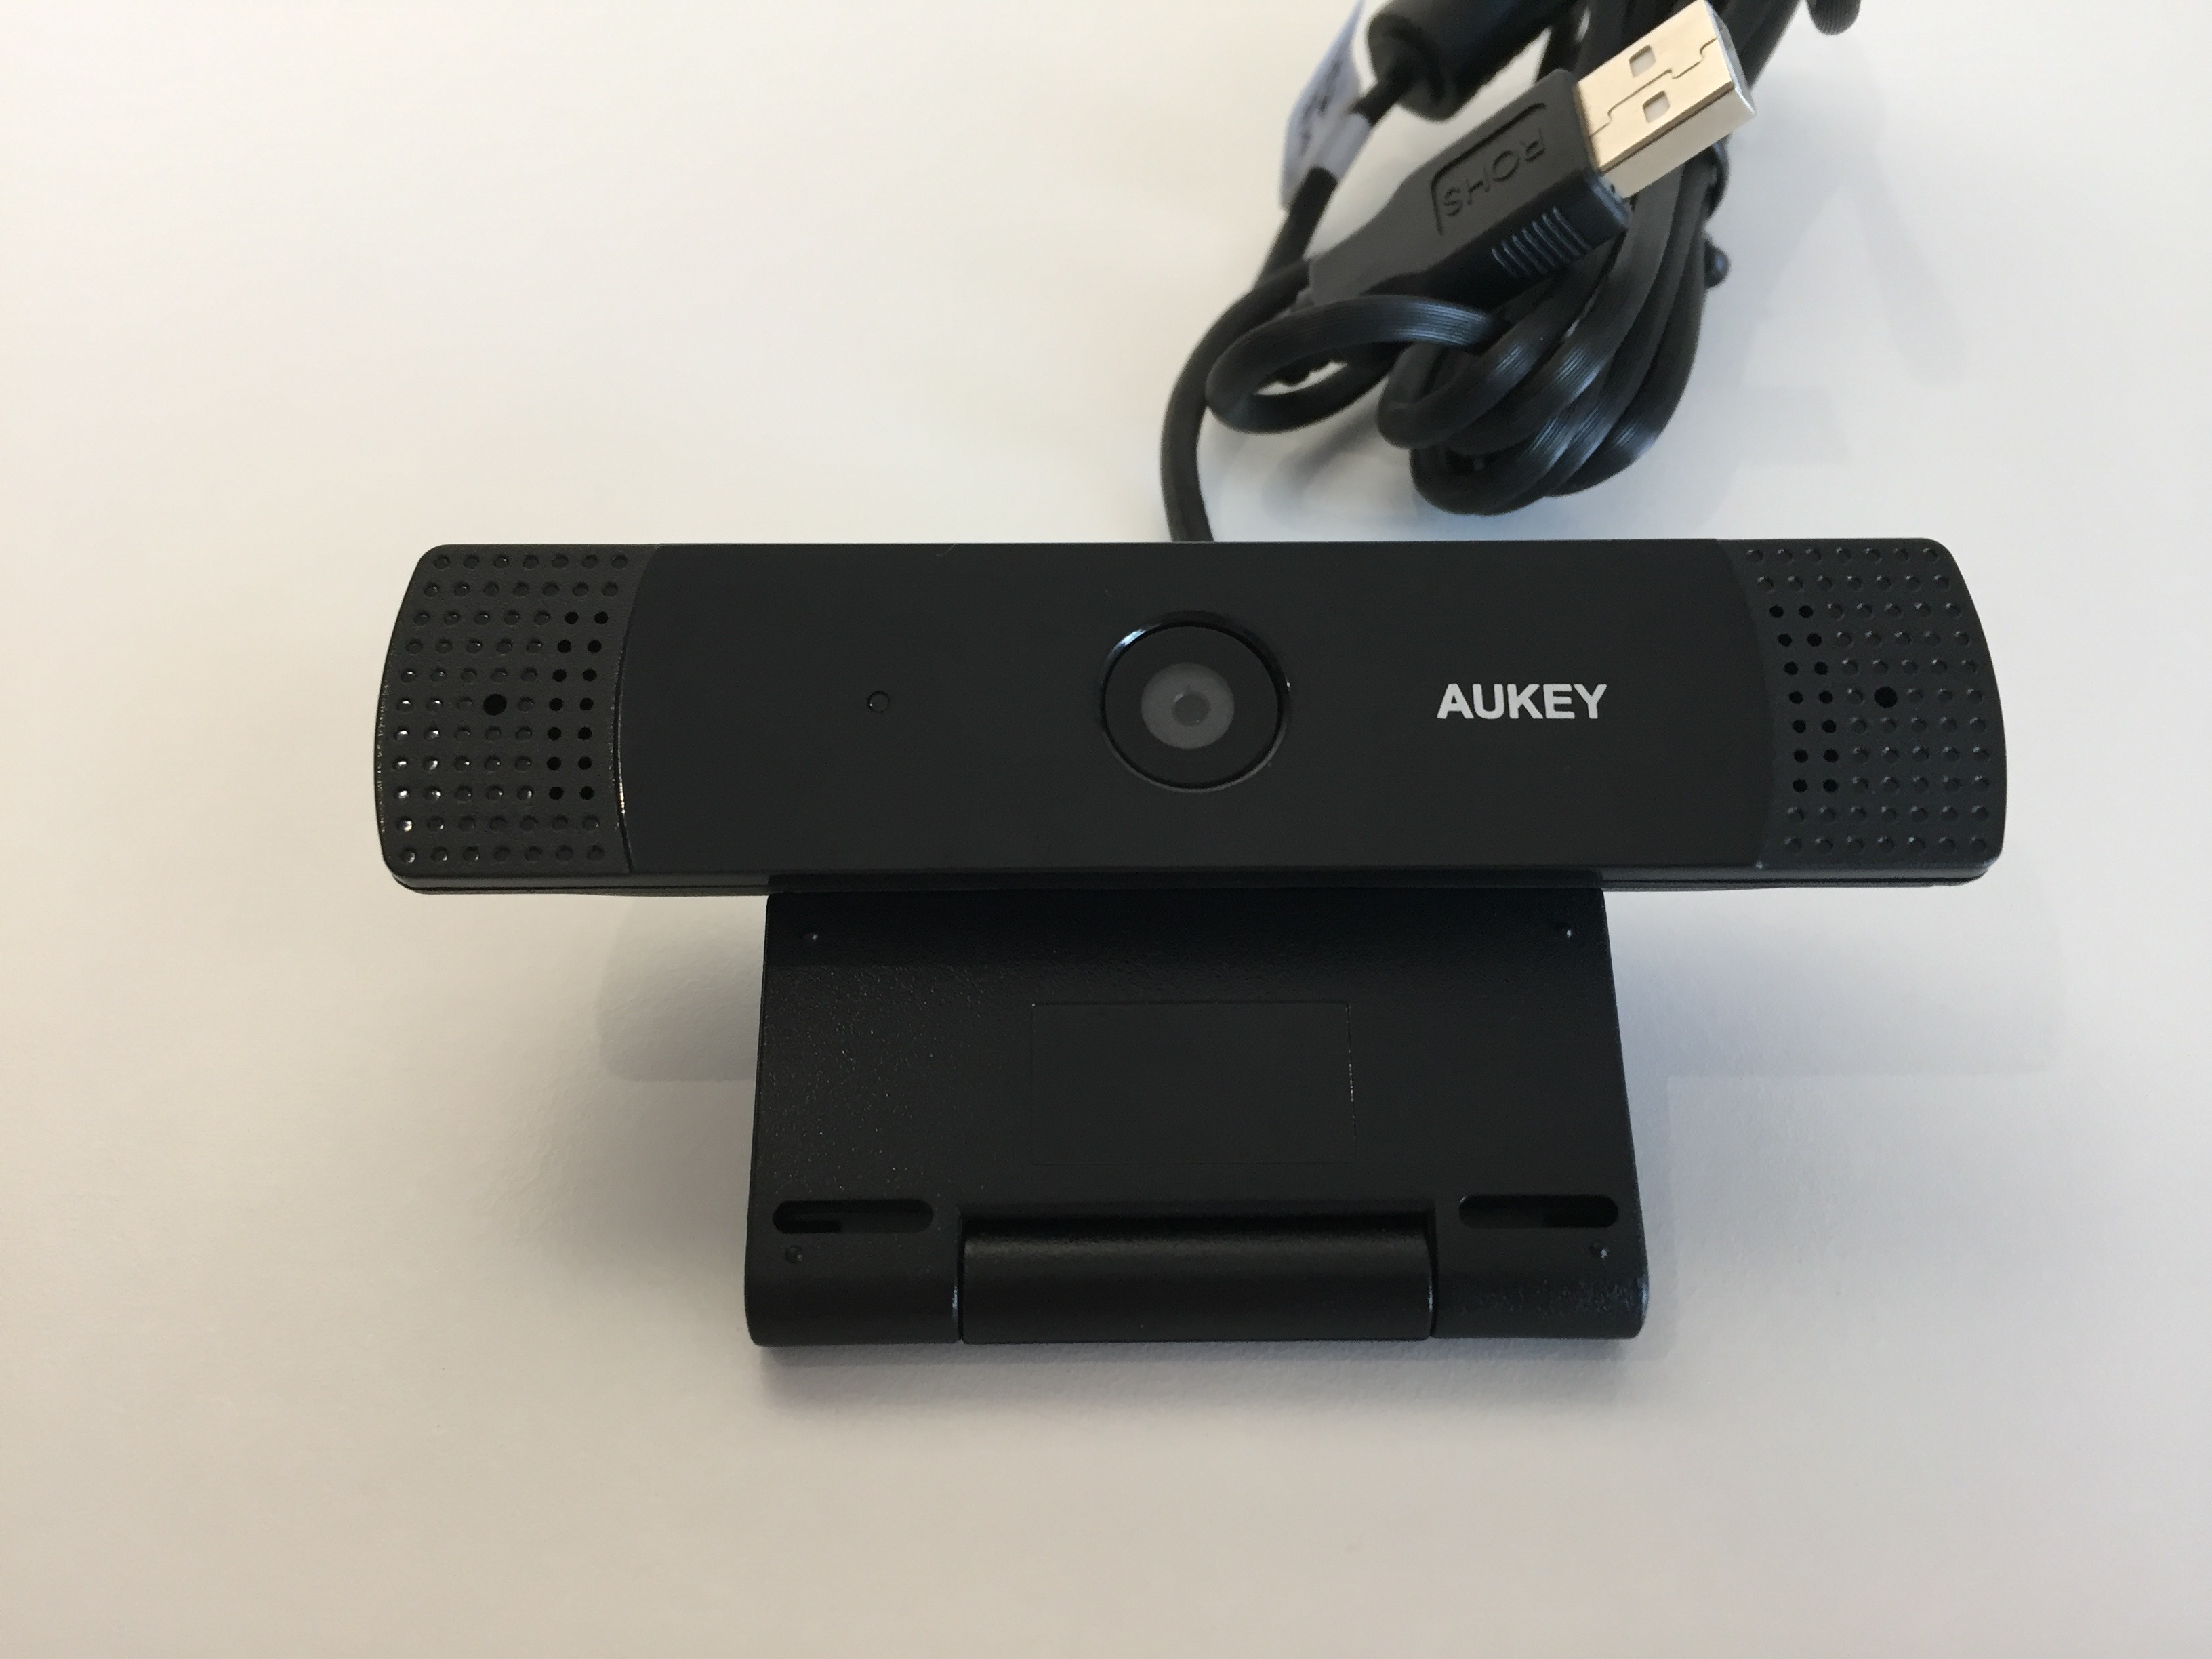 20170904 Test de la webcam 1080p de Aukey 6